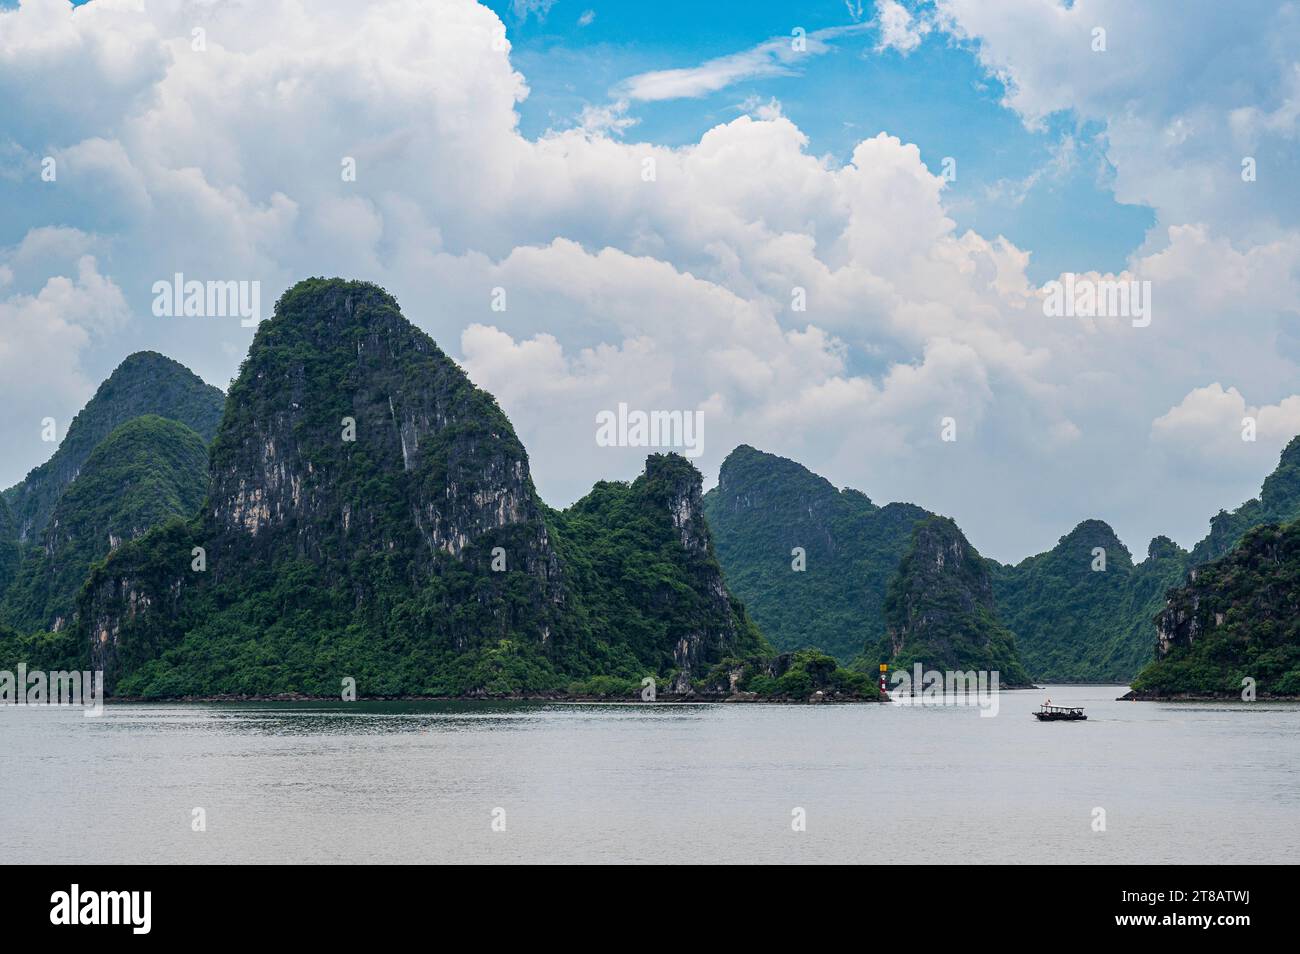 Piccole barche da pesca, nello spettacolare scenario della Baia di ha Long, Vietnam. Una delle moderne meraviglie naturali del mondo. Foto Stock